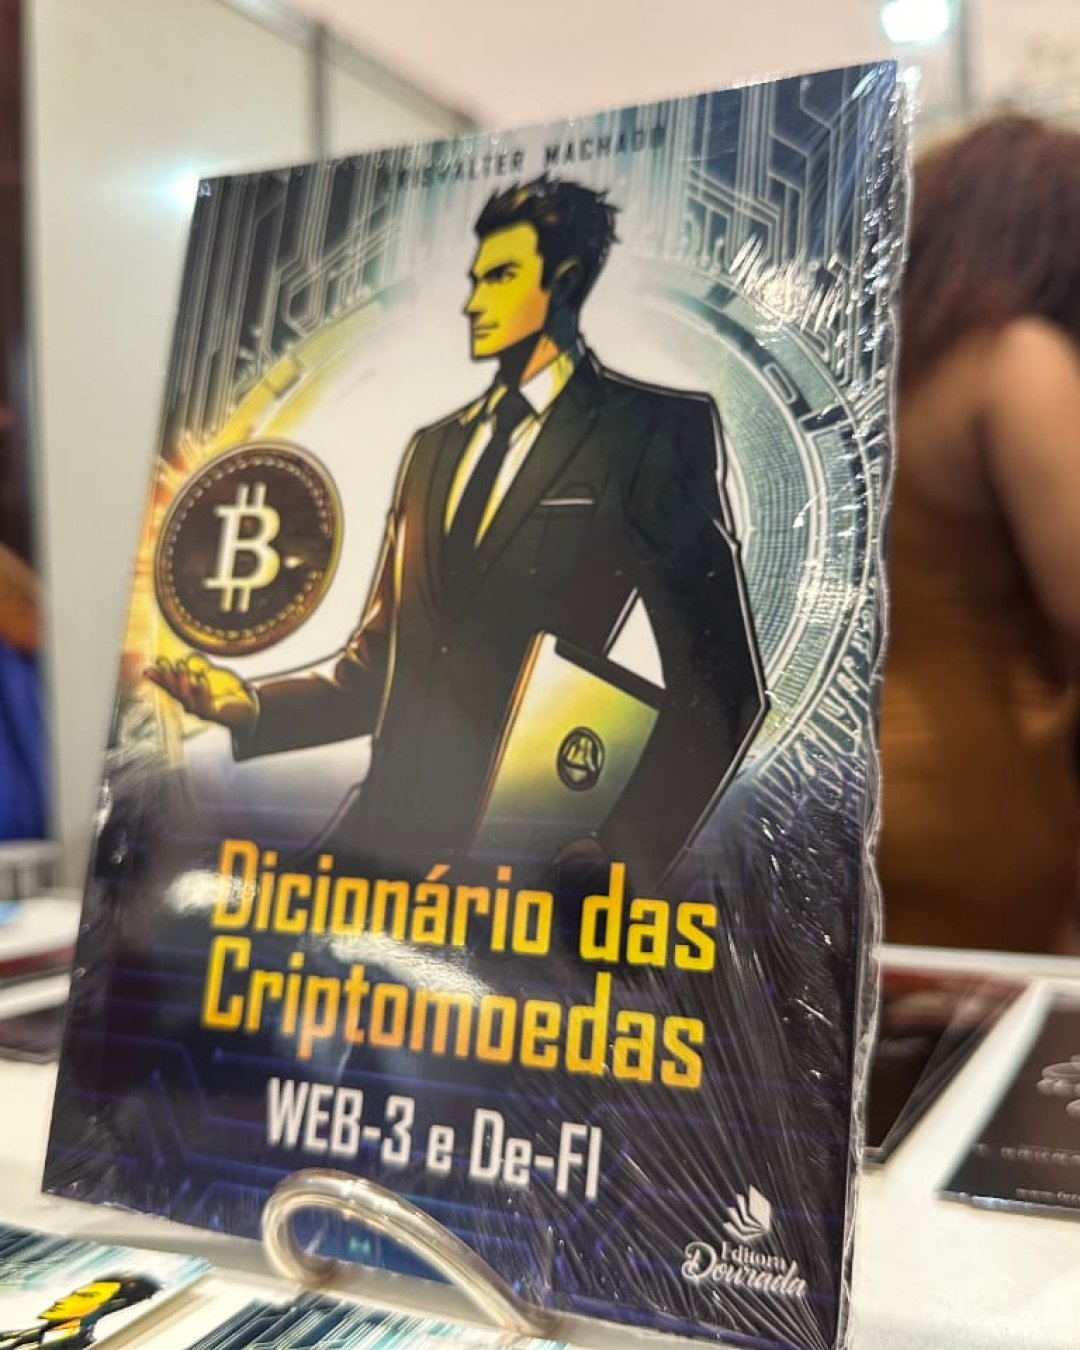 Lançamento do Dicionário das Criptomoedas atrai multidão na Bienal do Livro em Salvador